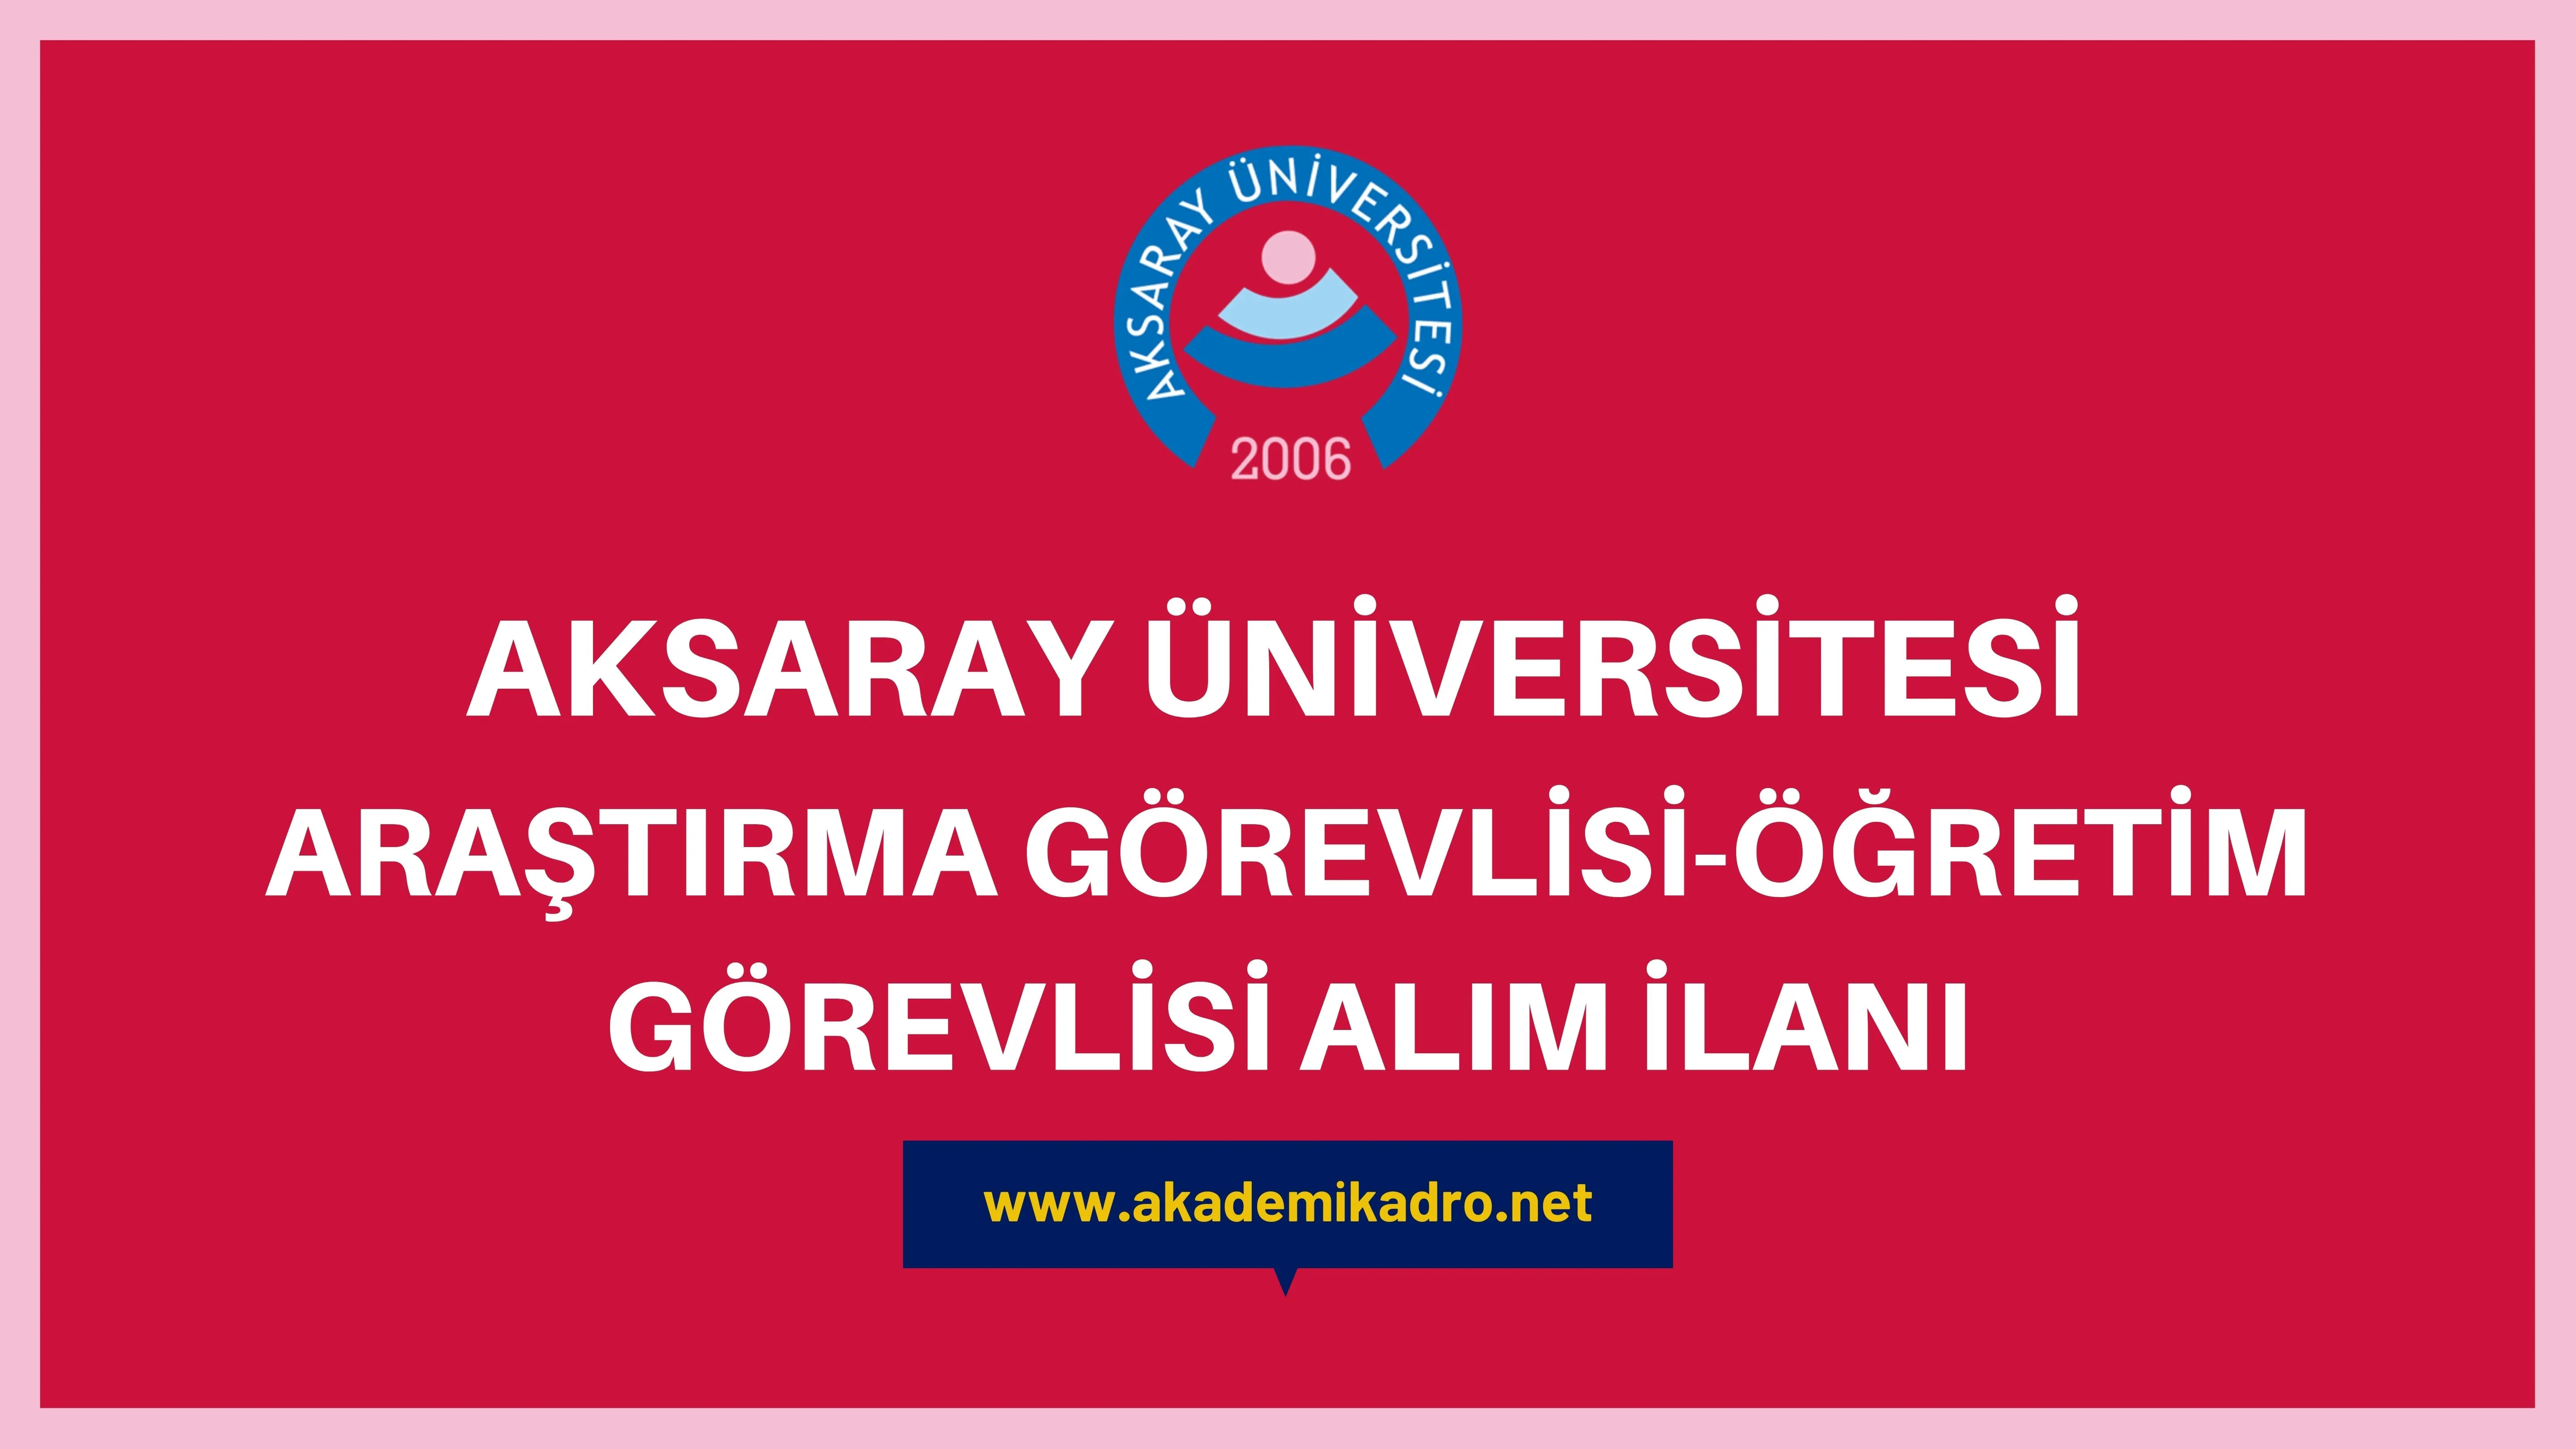 Aksaray Üniversitesi Araştırma görevlisi ve Öğretim görevlisi olmak üzere 11 Öğretim elemanı alacak. Son başvuru tarihi 30 Aralık 2022.